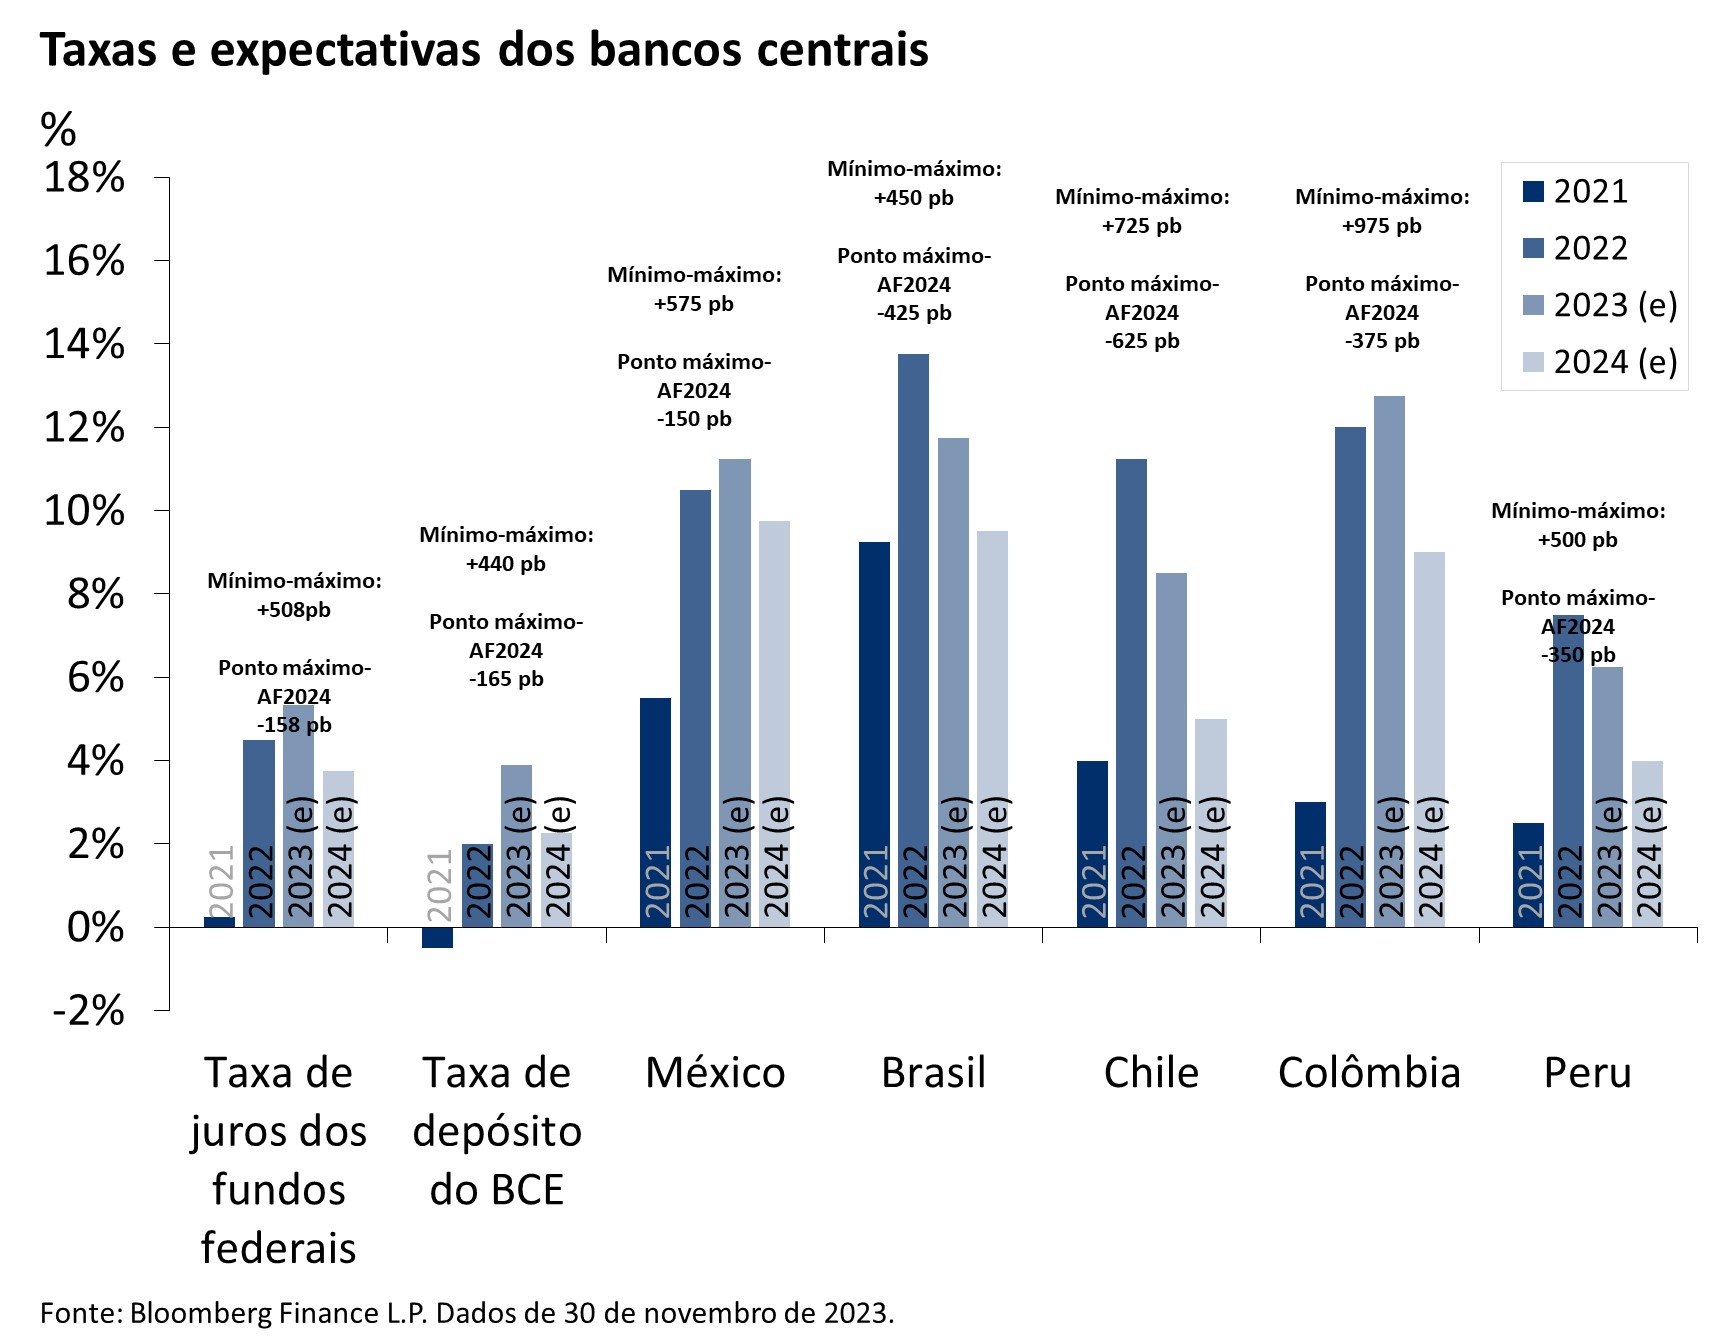 Gráfico mostra as taxas dos bancos centrais e as expectativas para os EUA, BCE, México, Brasil, Chile, Colômbia e Peru, de 2021 a 2024 (estimado).